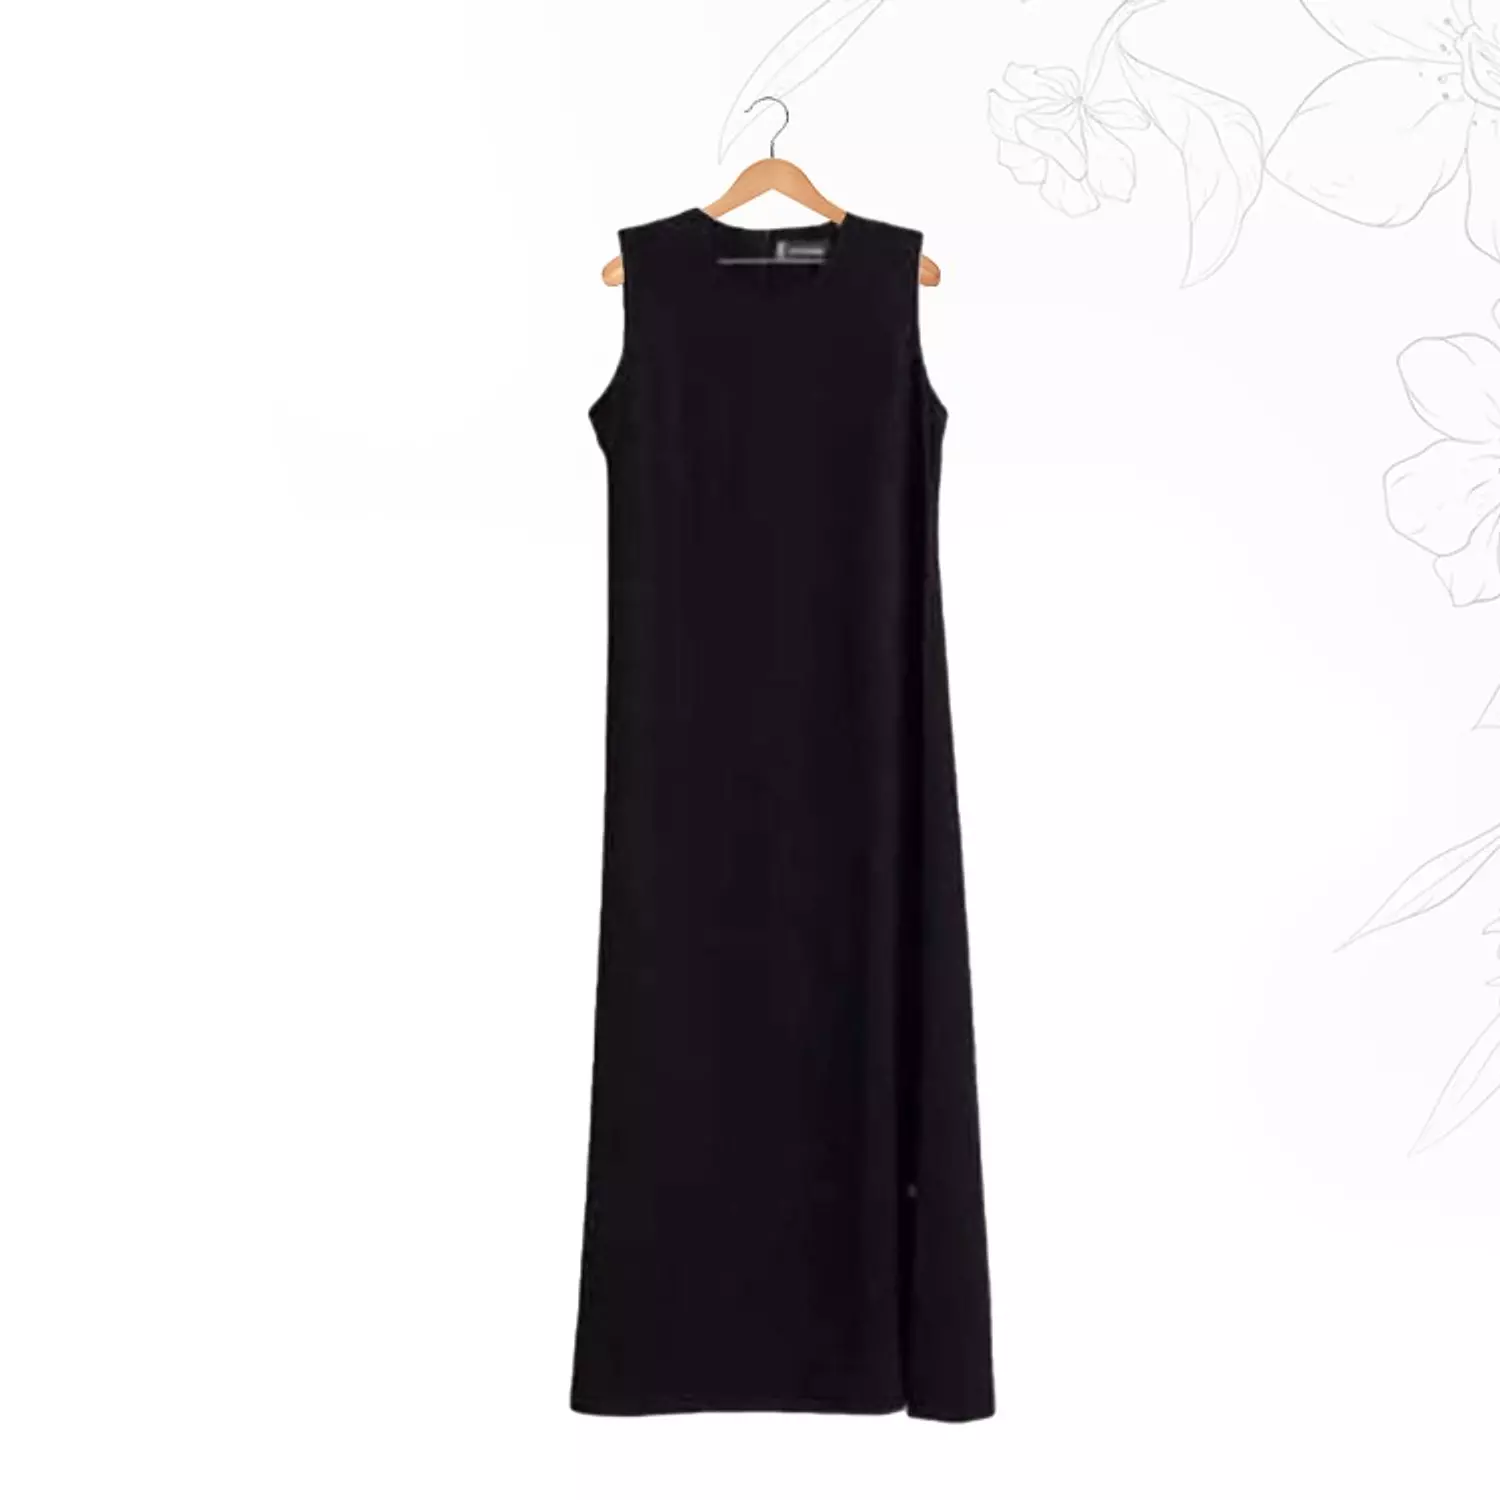 Sleeveless Basic Dress- Black hover image